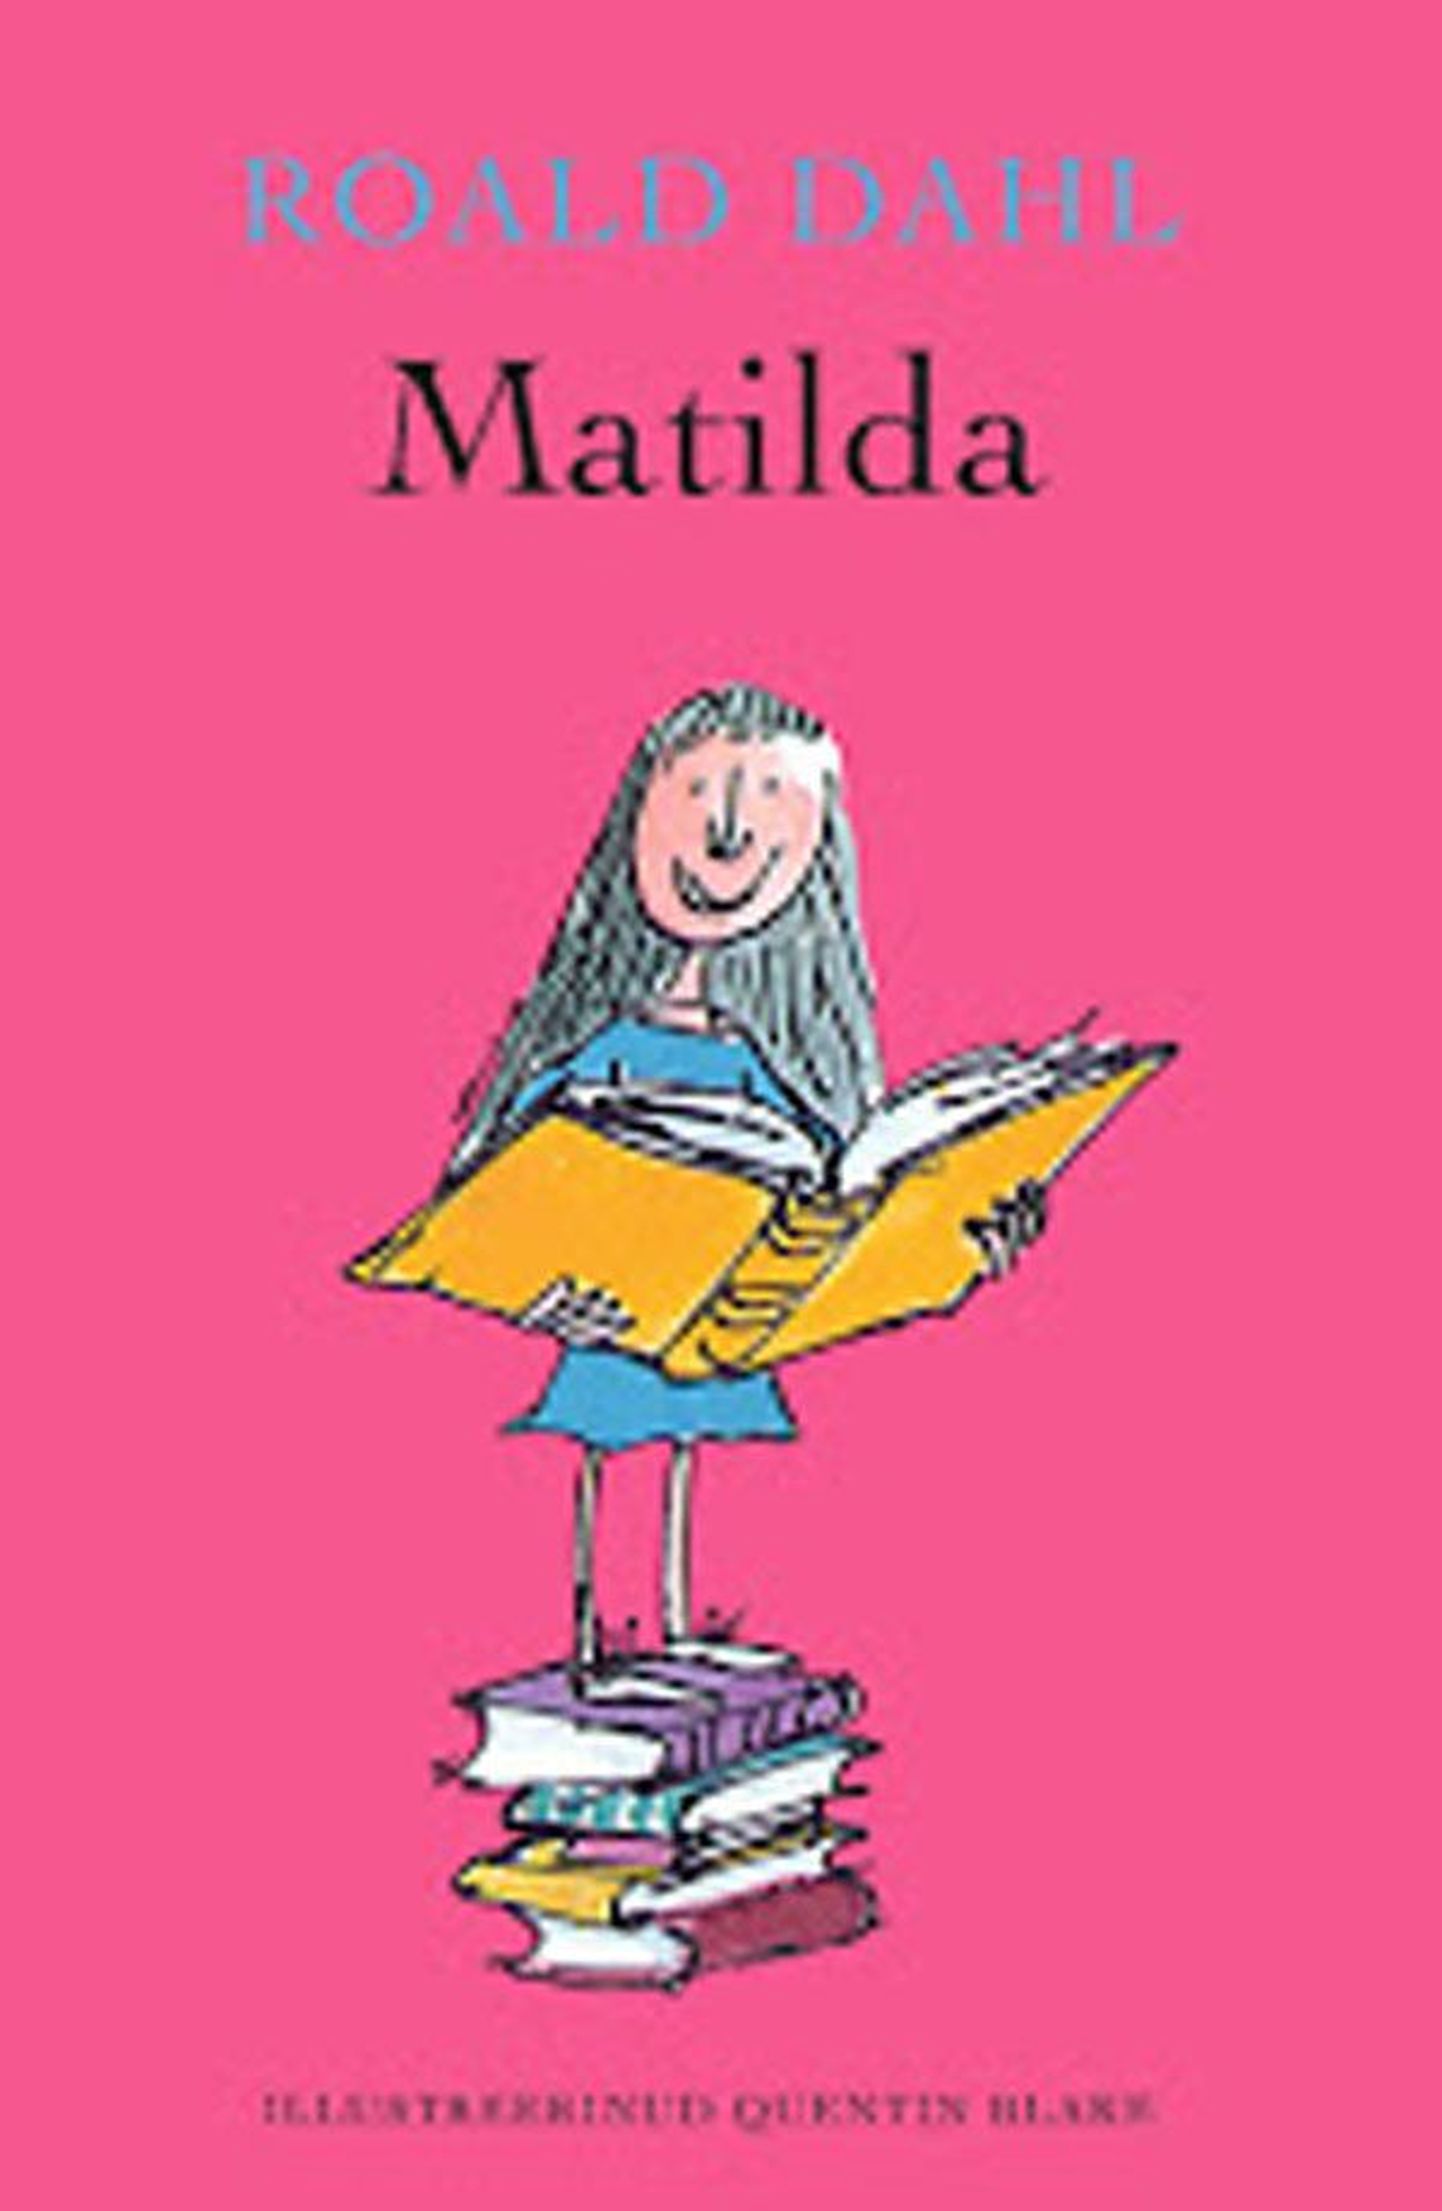 Raamat
Roald Dahl 
«Matilda»
Draakon&Kuu, 2013